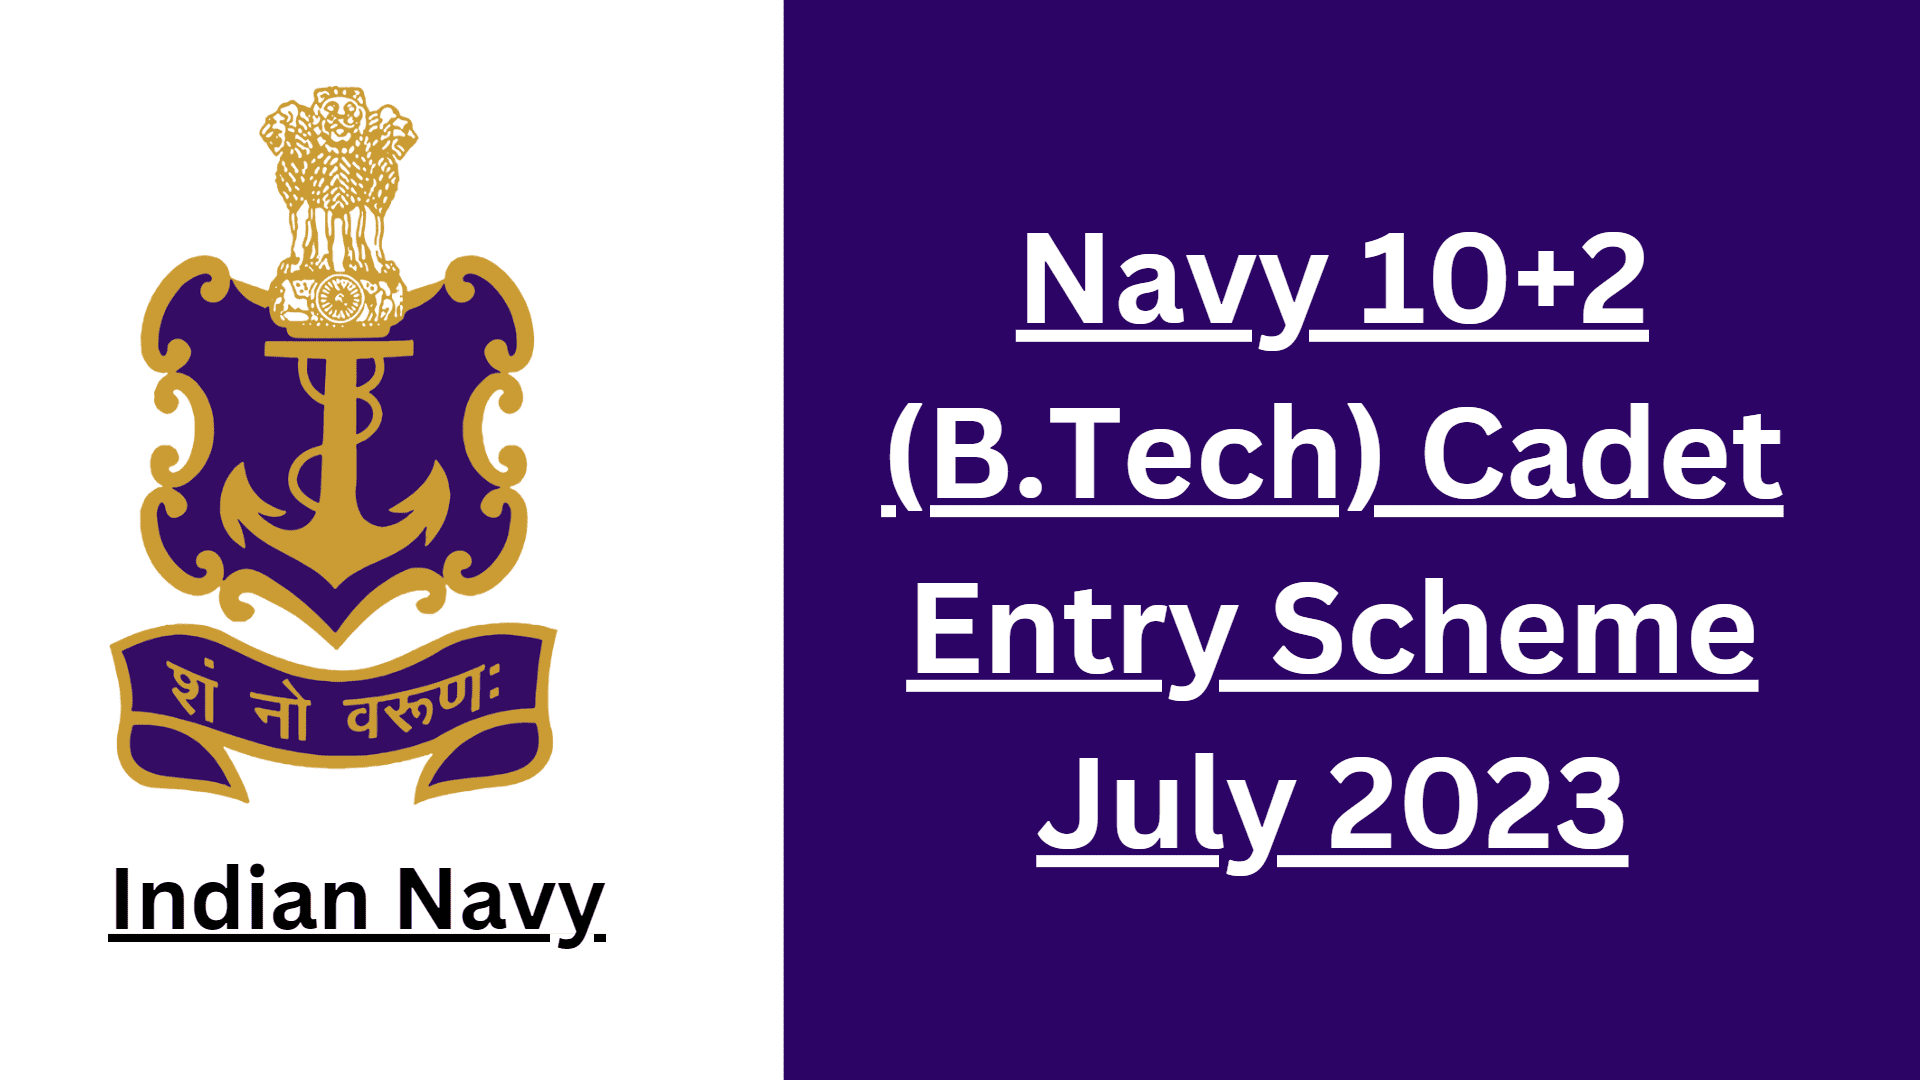 Navy 10+2 Cadet Entry Scheme